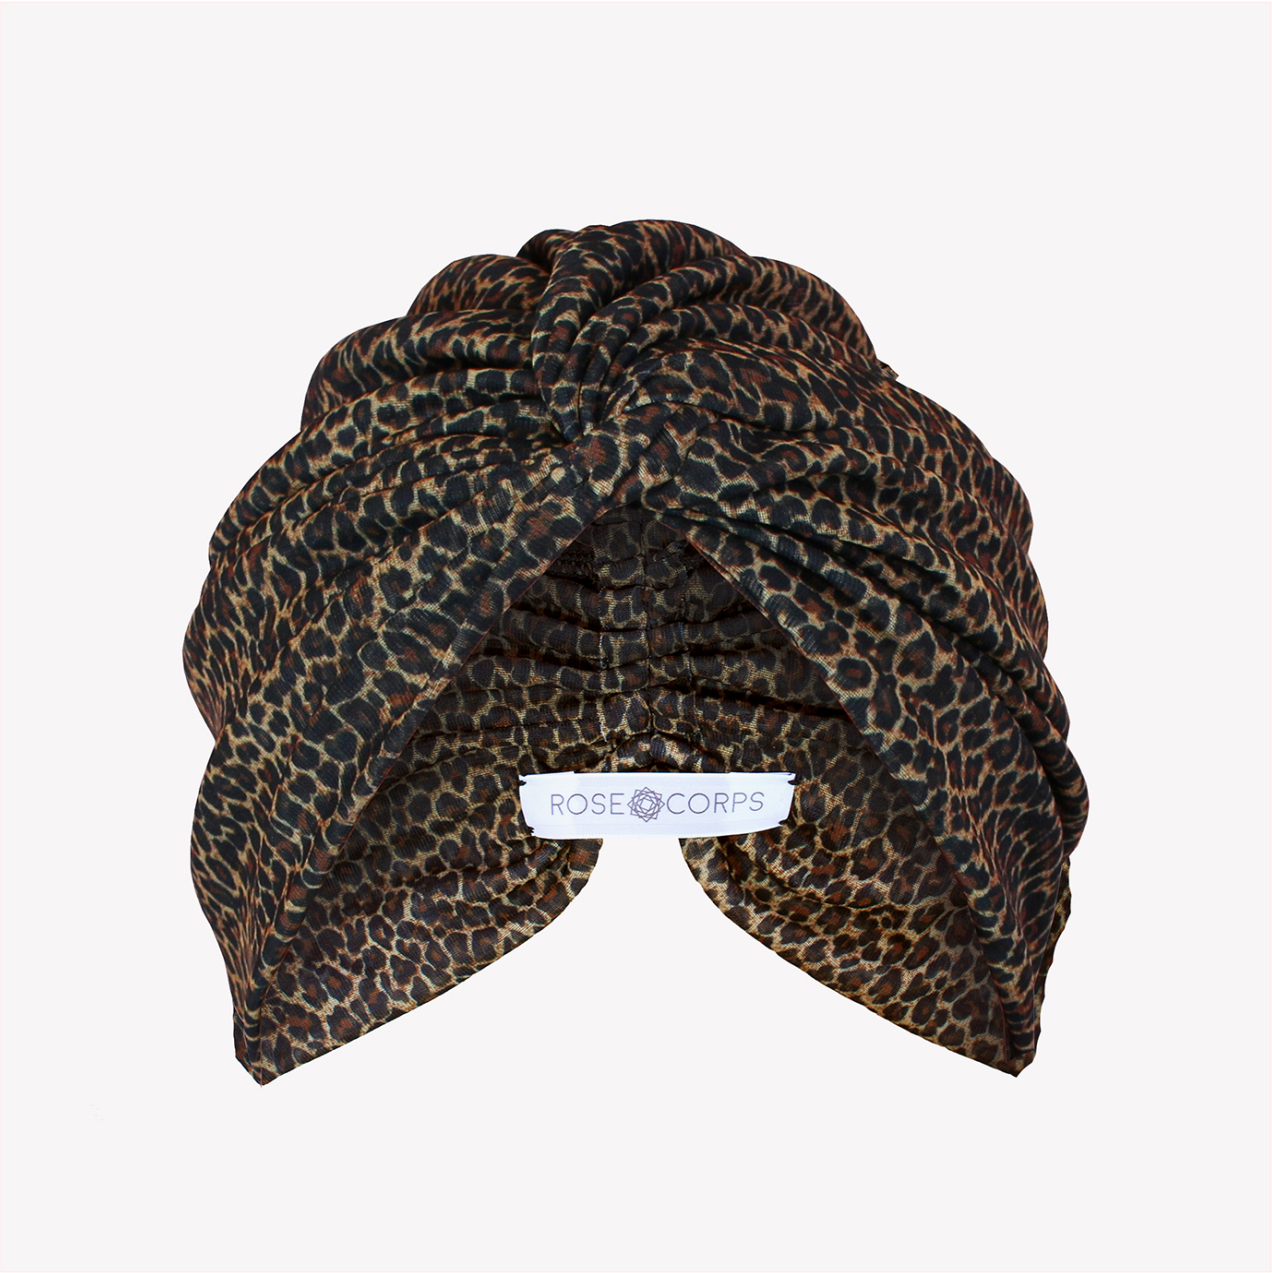 Classic leopard turban with twist